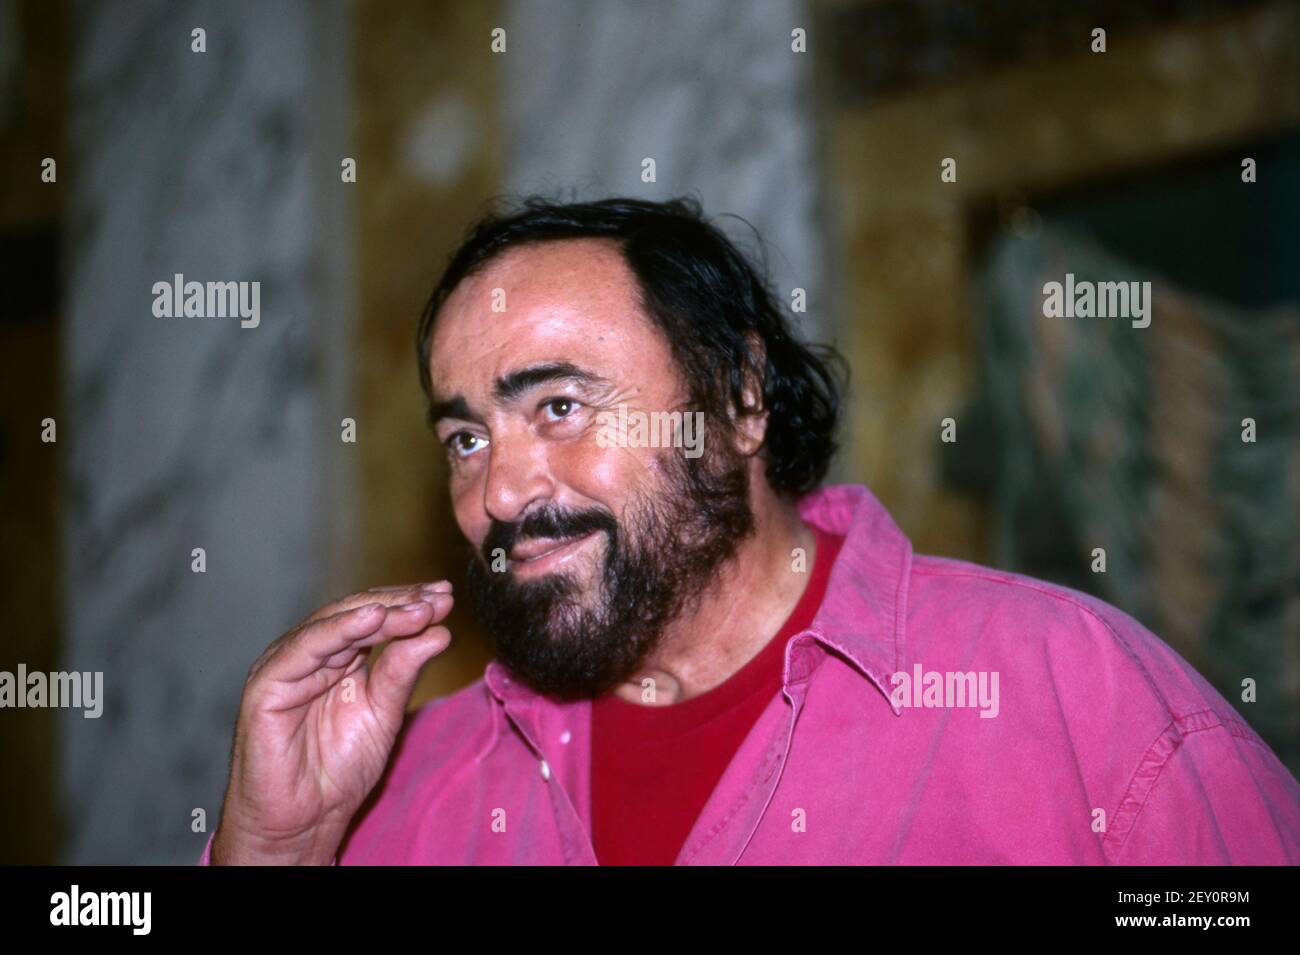 Luciano Pavarotti, italienischer Opernsänger und einer der größten Tenöre des 20. Jahrhundert, Porträt, 1995. Luciano Pavarotti, italienischer Opernsänger und einer der größten Tenöre des 20th. Jahrhunderts, Portrait, 1995 Stockfoto